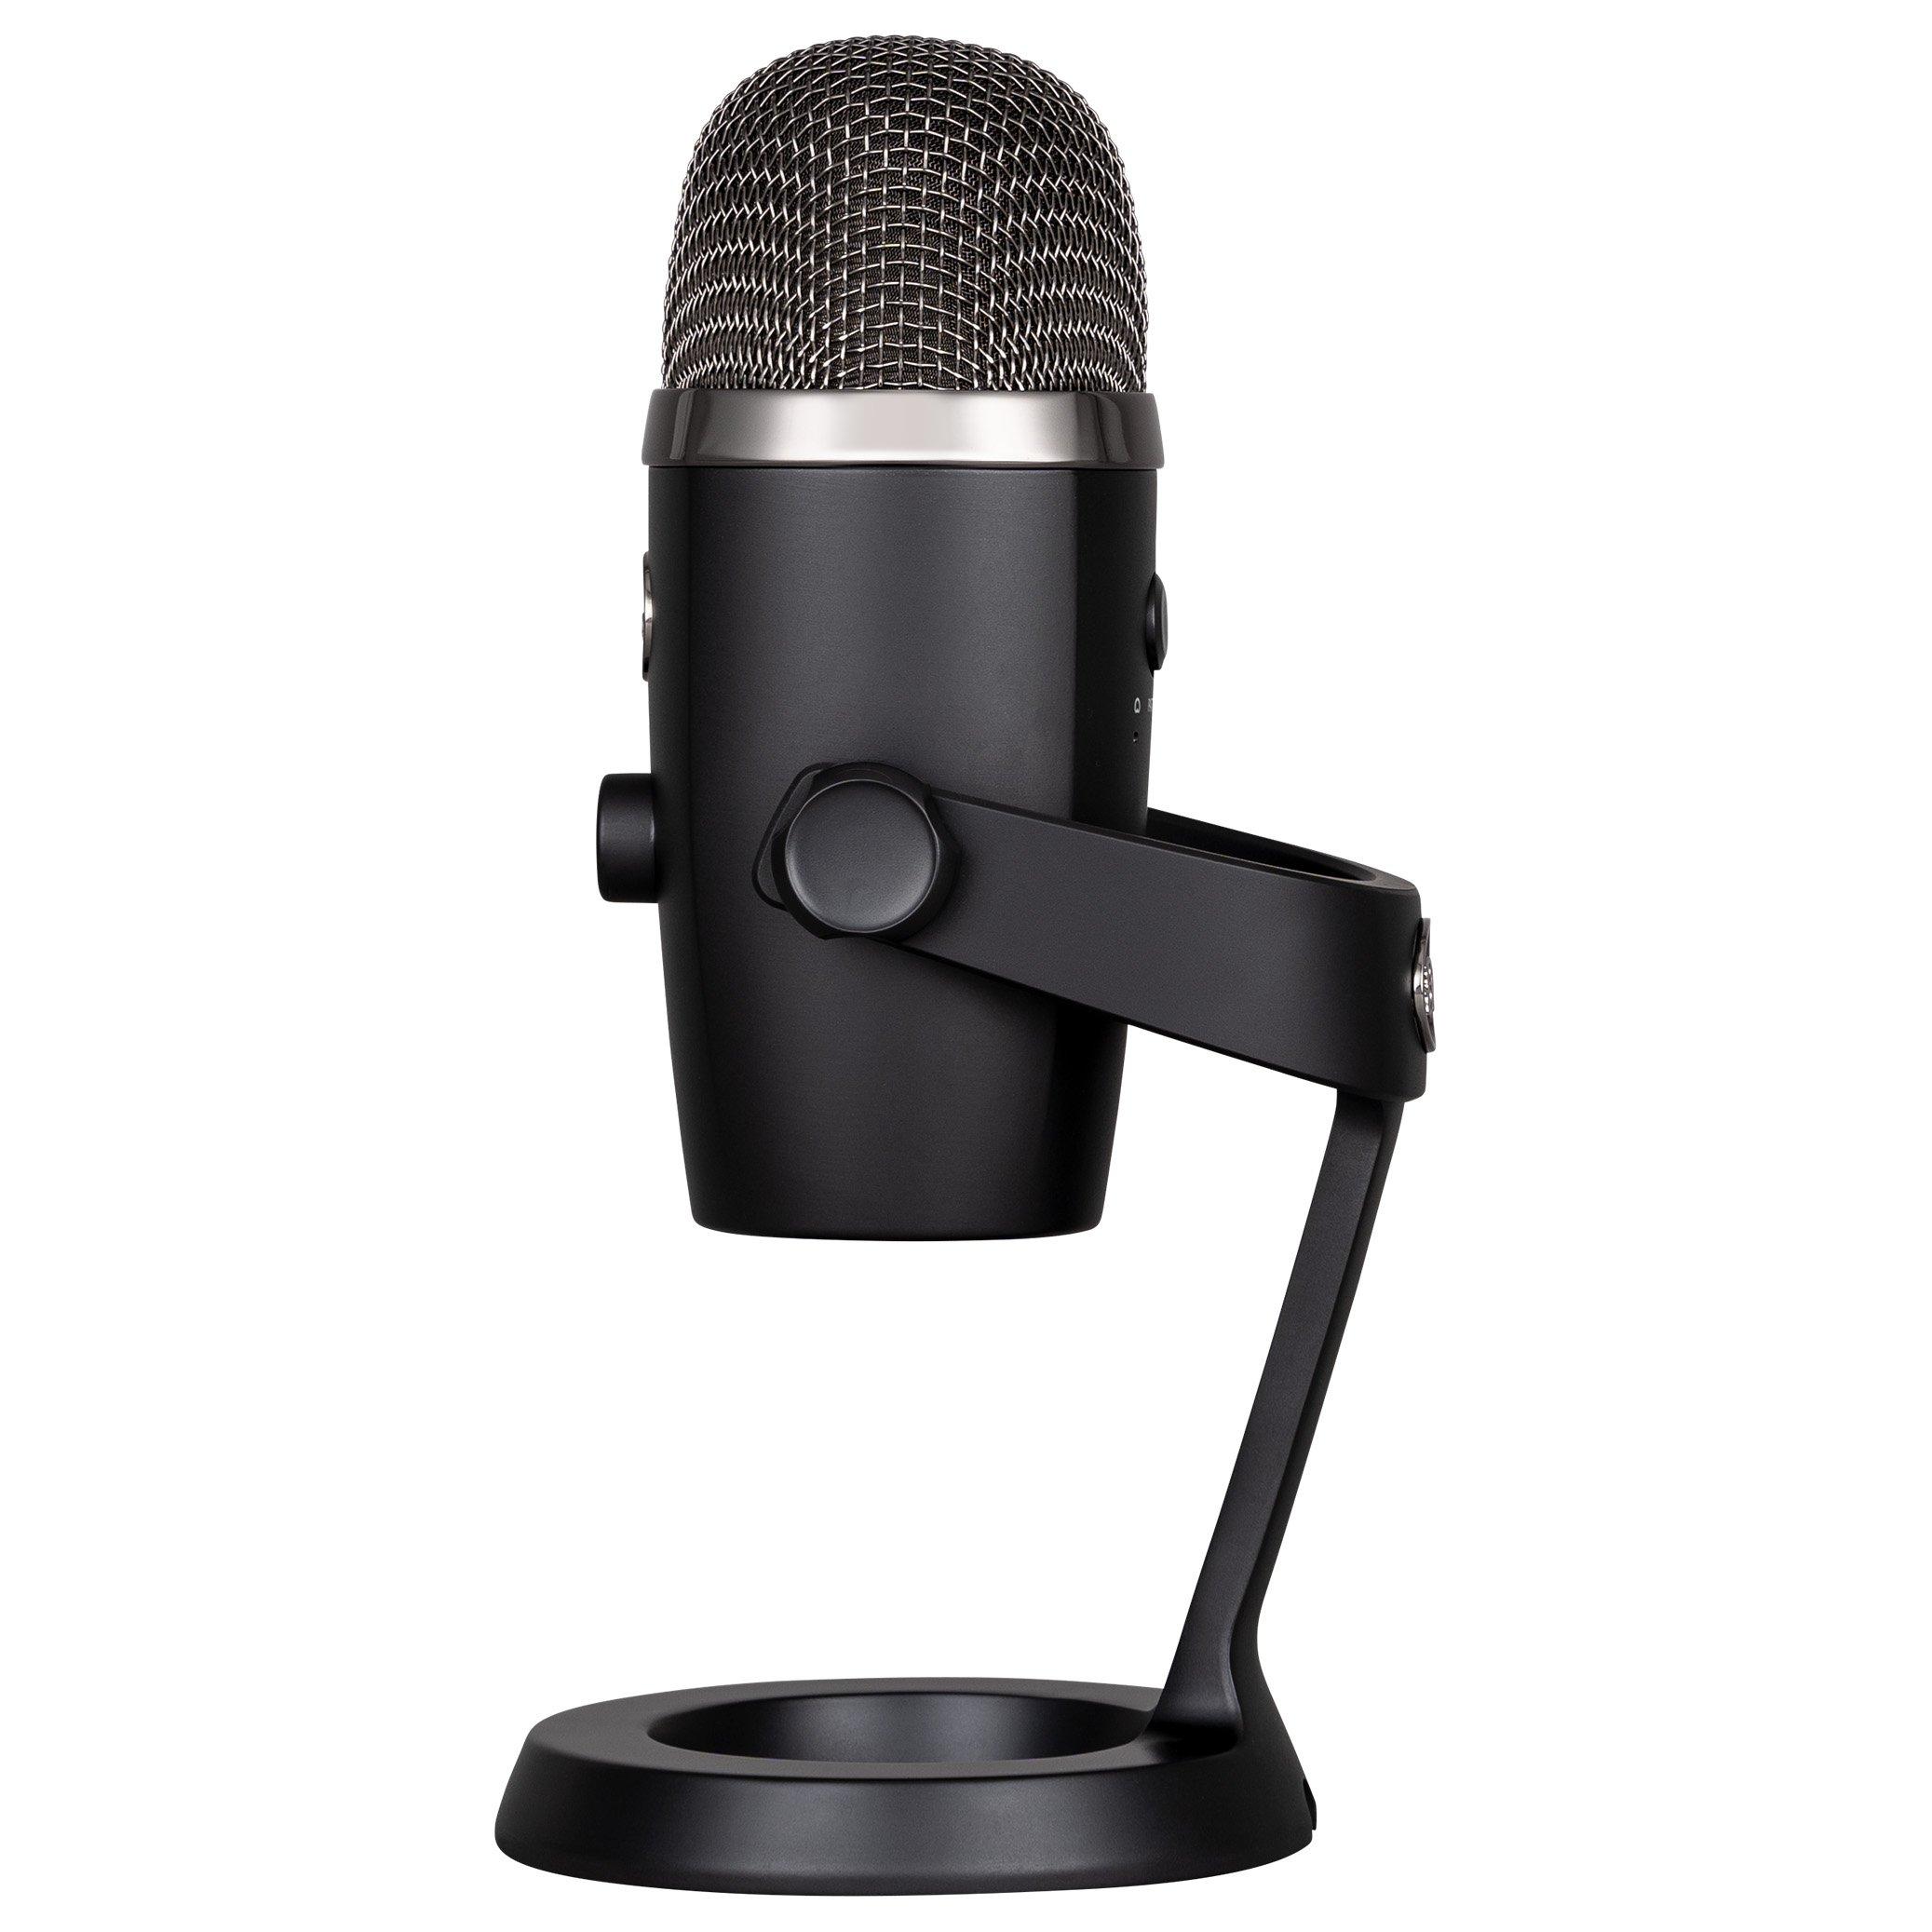 Yeti Nano (Shadow Grey) Microphone usb Blue